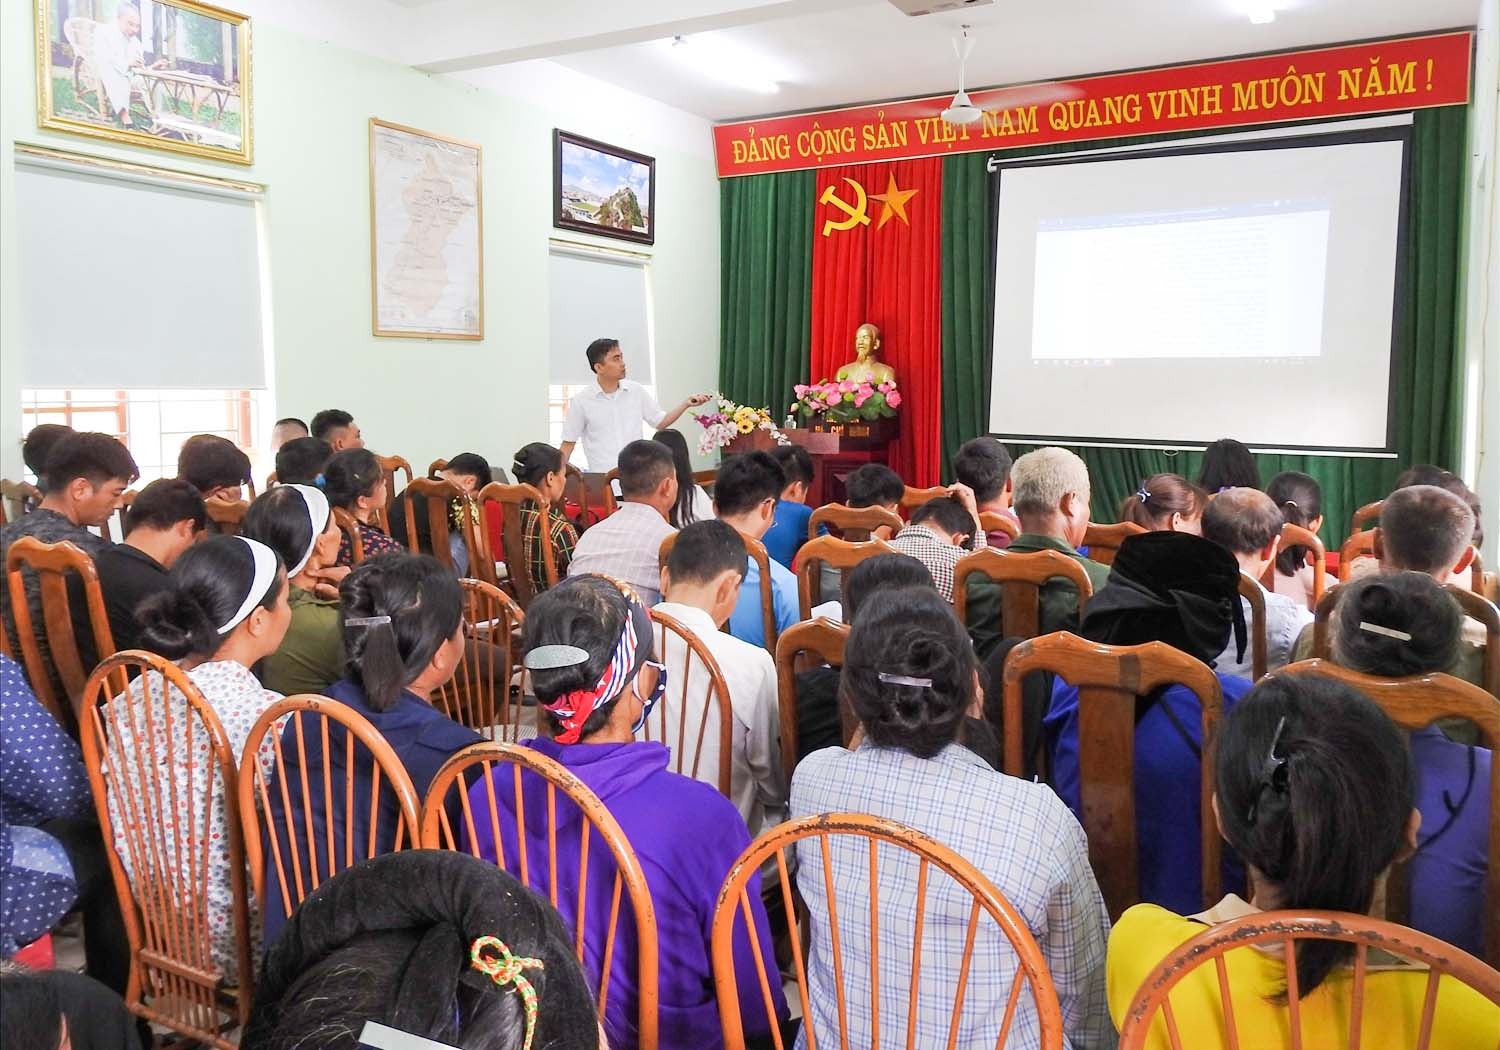 Đông đảo người dân đến tham dự buổi tuyên truyền phổ biến giáo dục pháp luật và trợ giúp pháp lý tại xã Vân Thủy